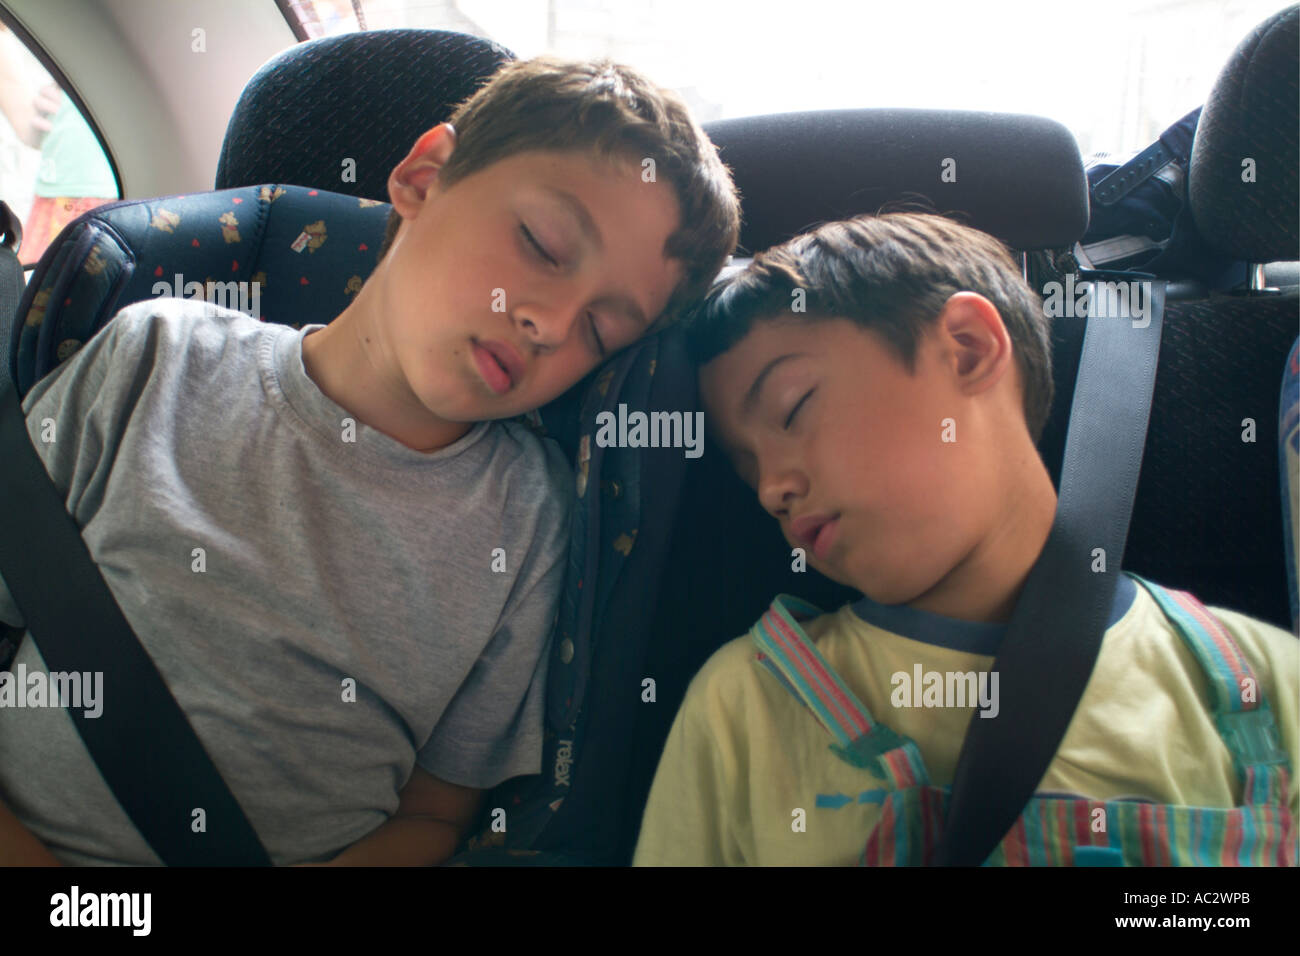 Zwei jungen in Autositzen, Reisen, schlafen im Auto mit Teddybären  Stockfotografie - Alamy